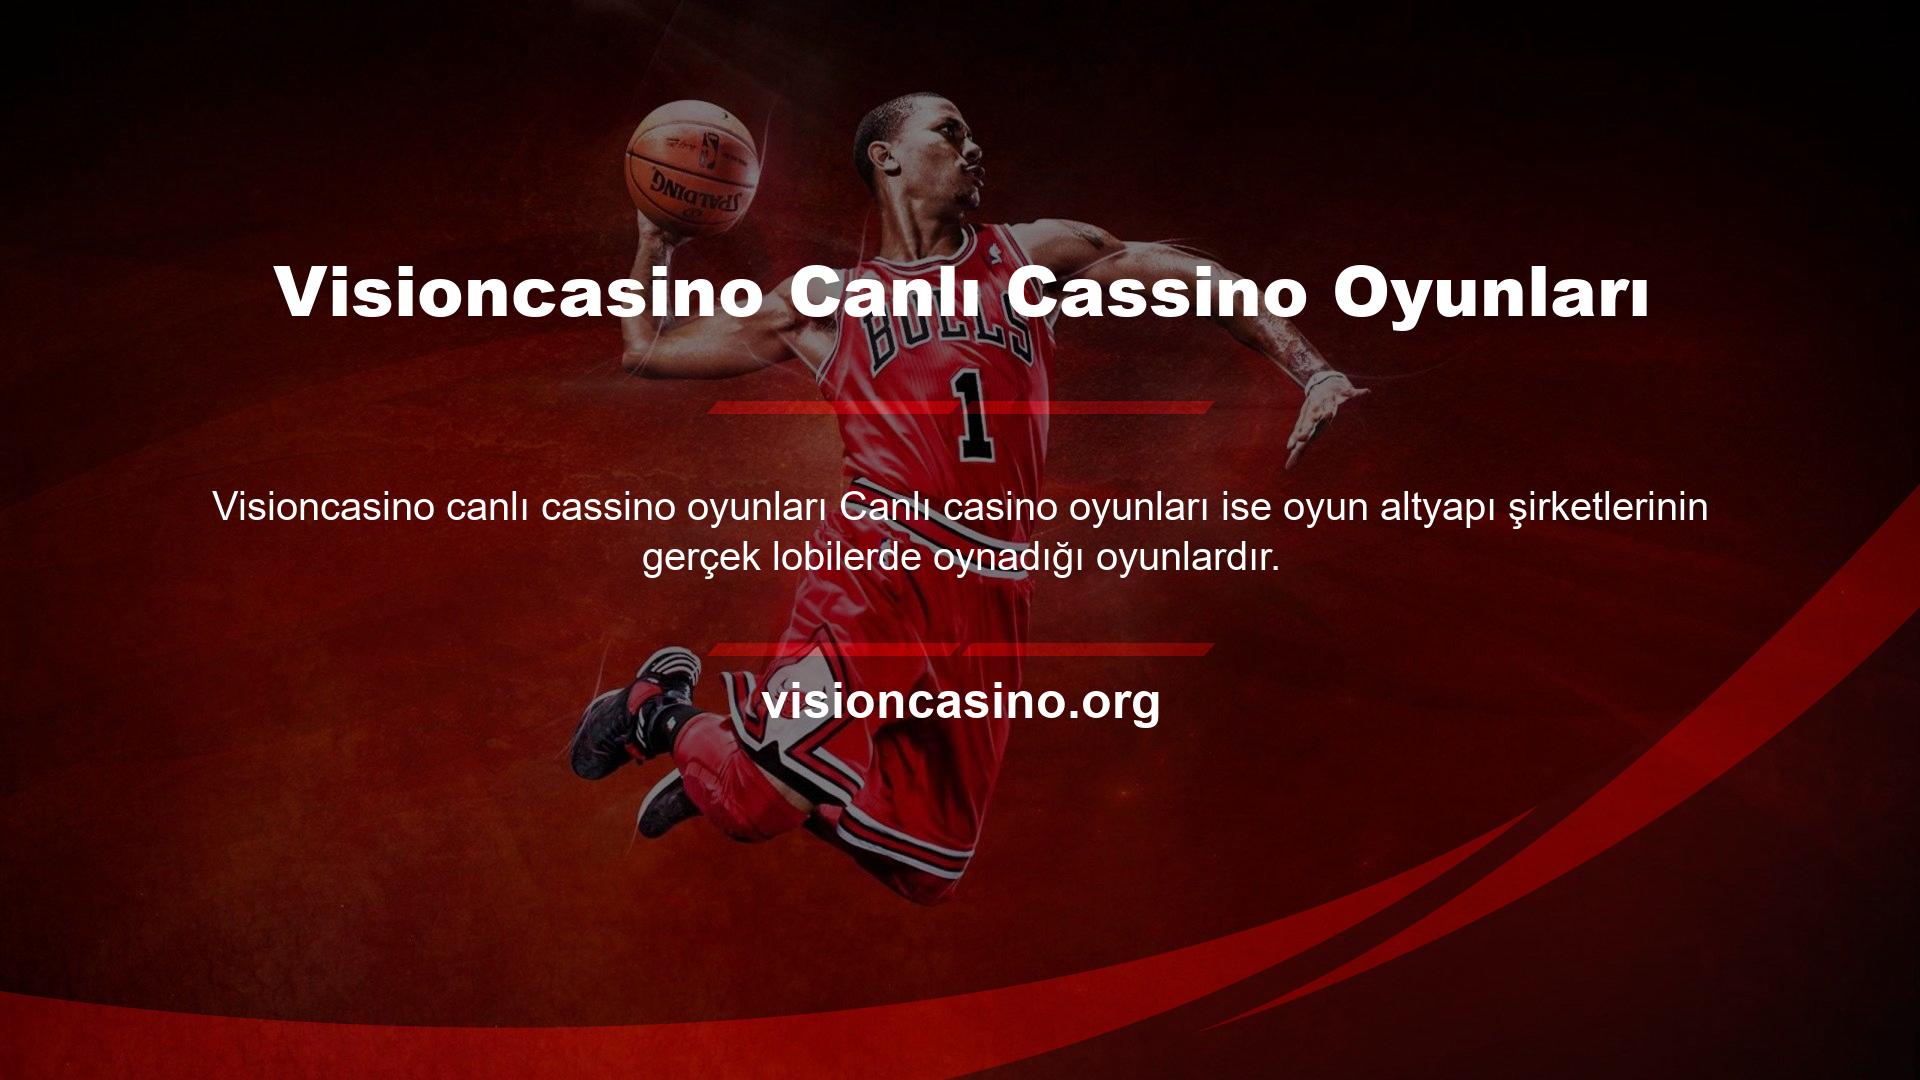 Visioncasino Canlı Casino Oyunları